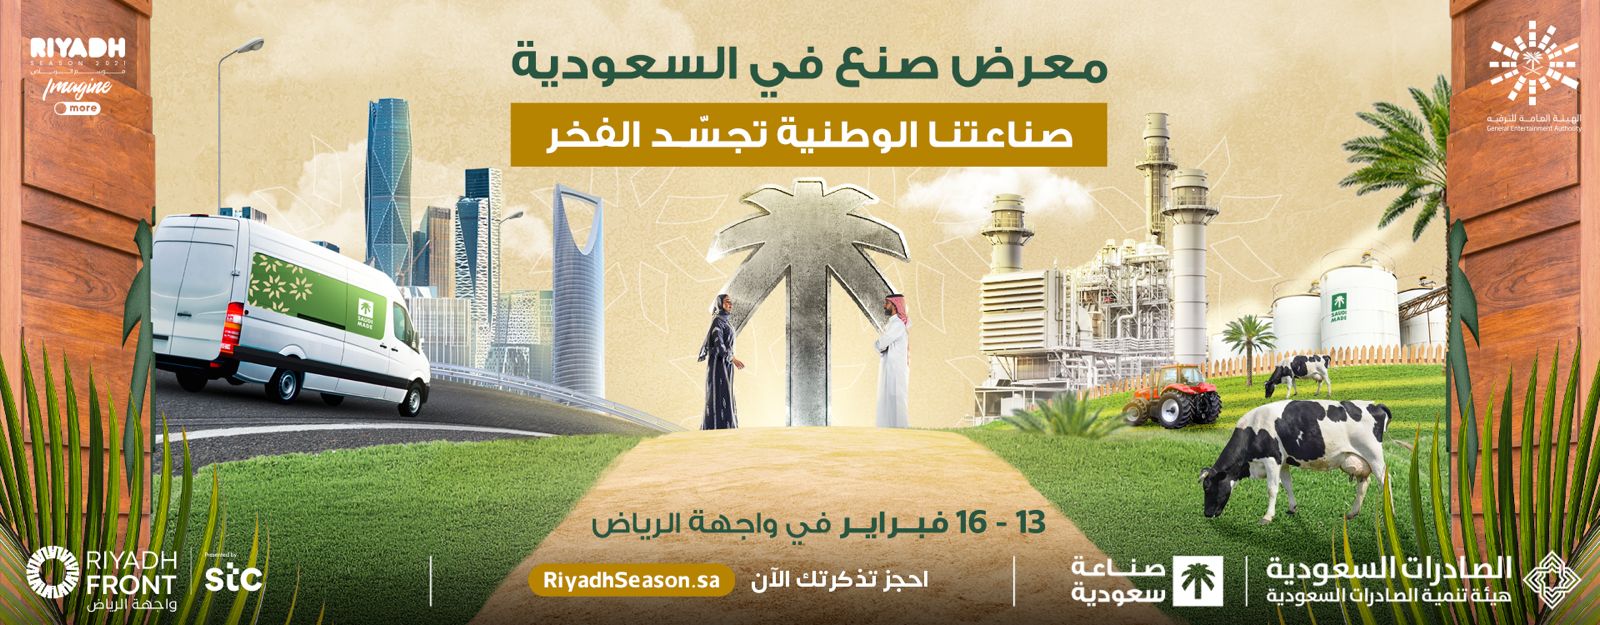 “صنع في السعودية”.. معرض ينطلق من واجهة الرياض لتوطين صناعات المملكة ومضاعفة صادراتها العالمية